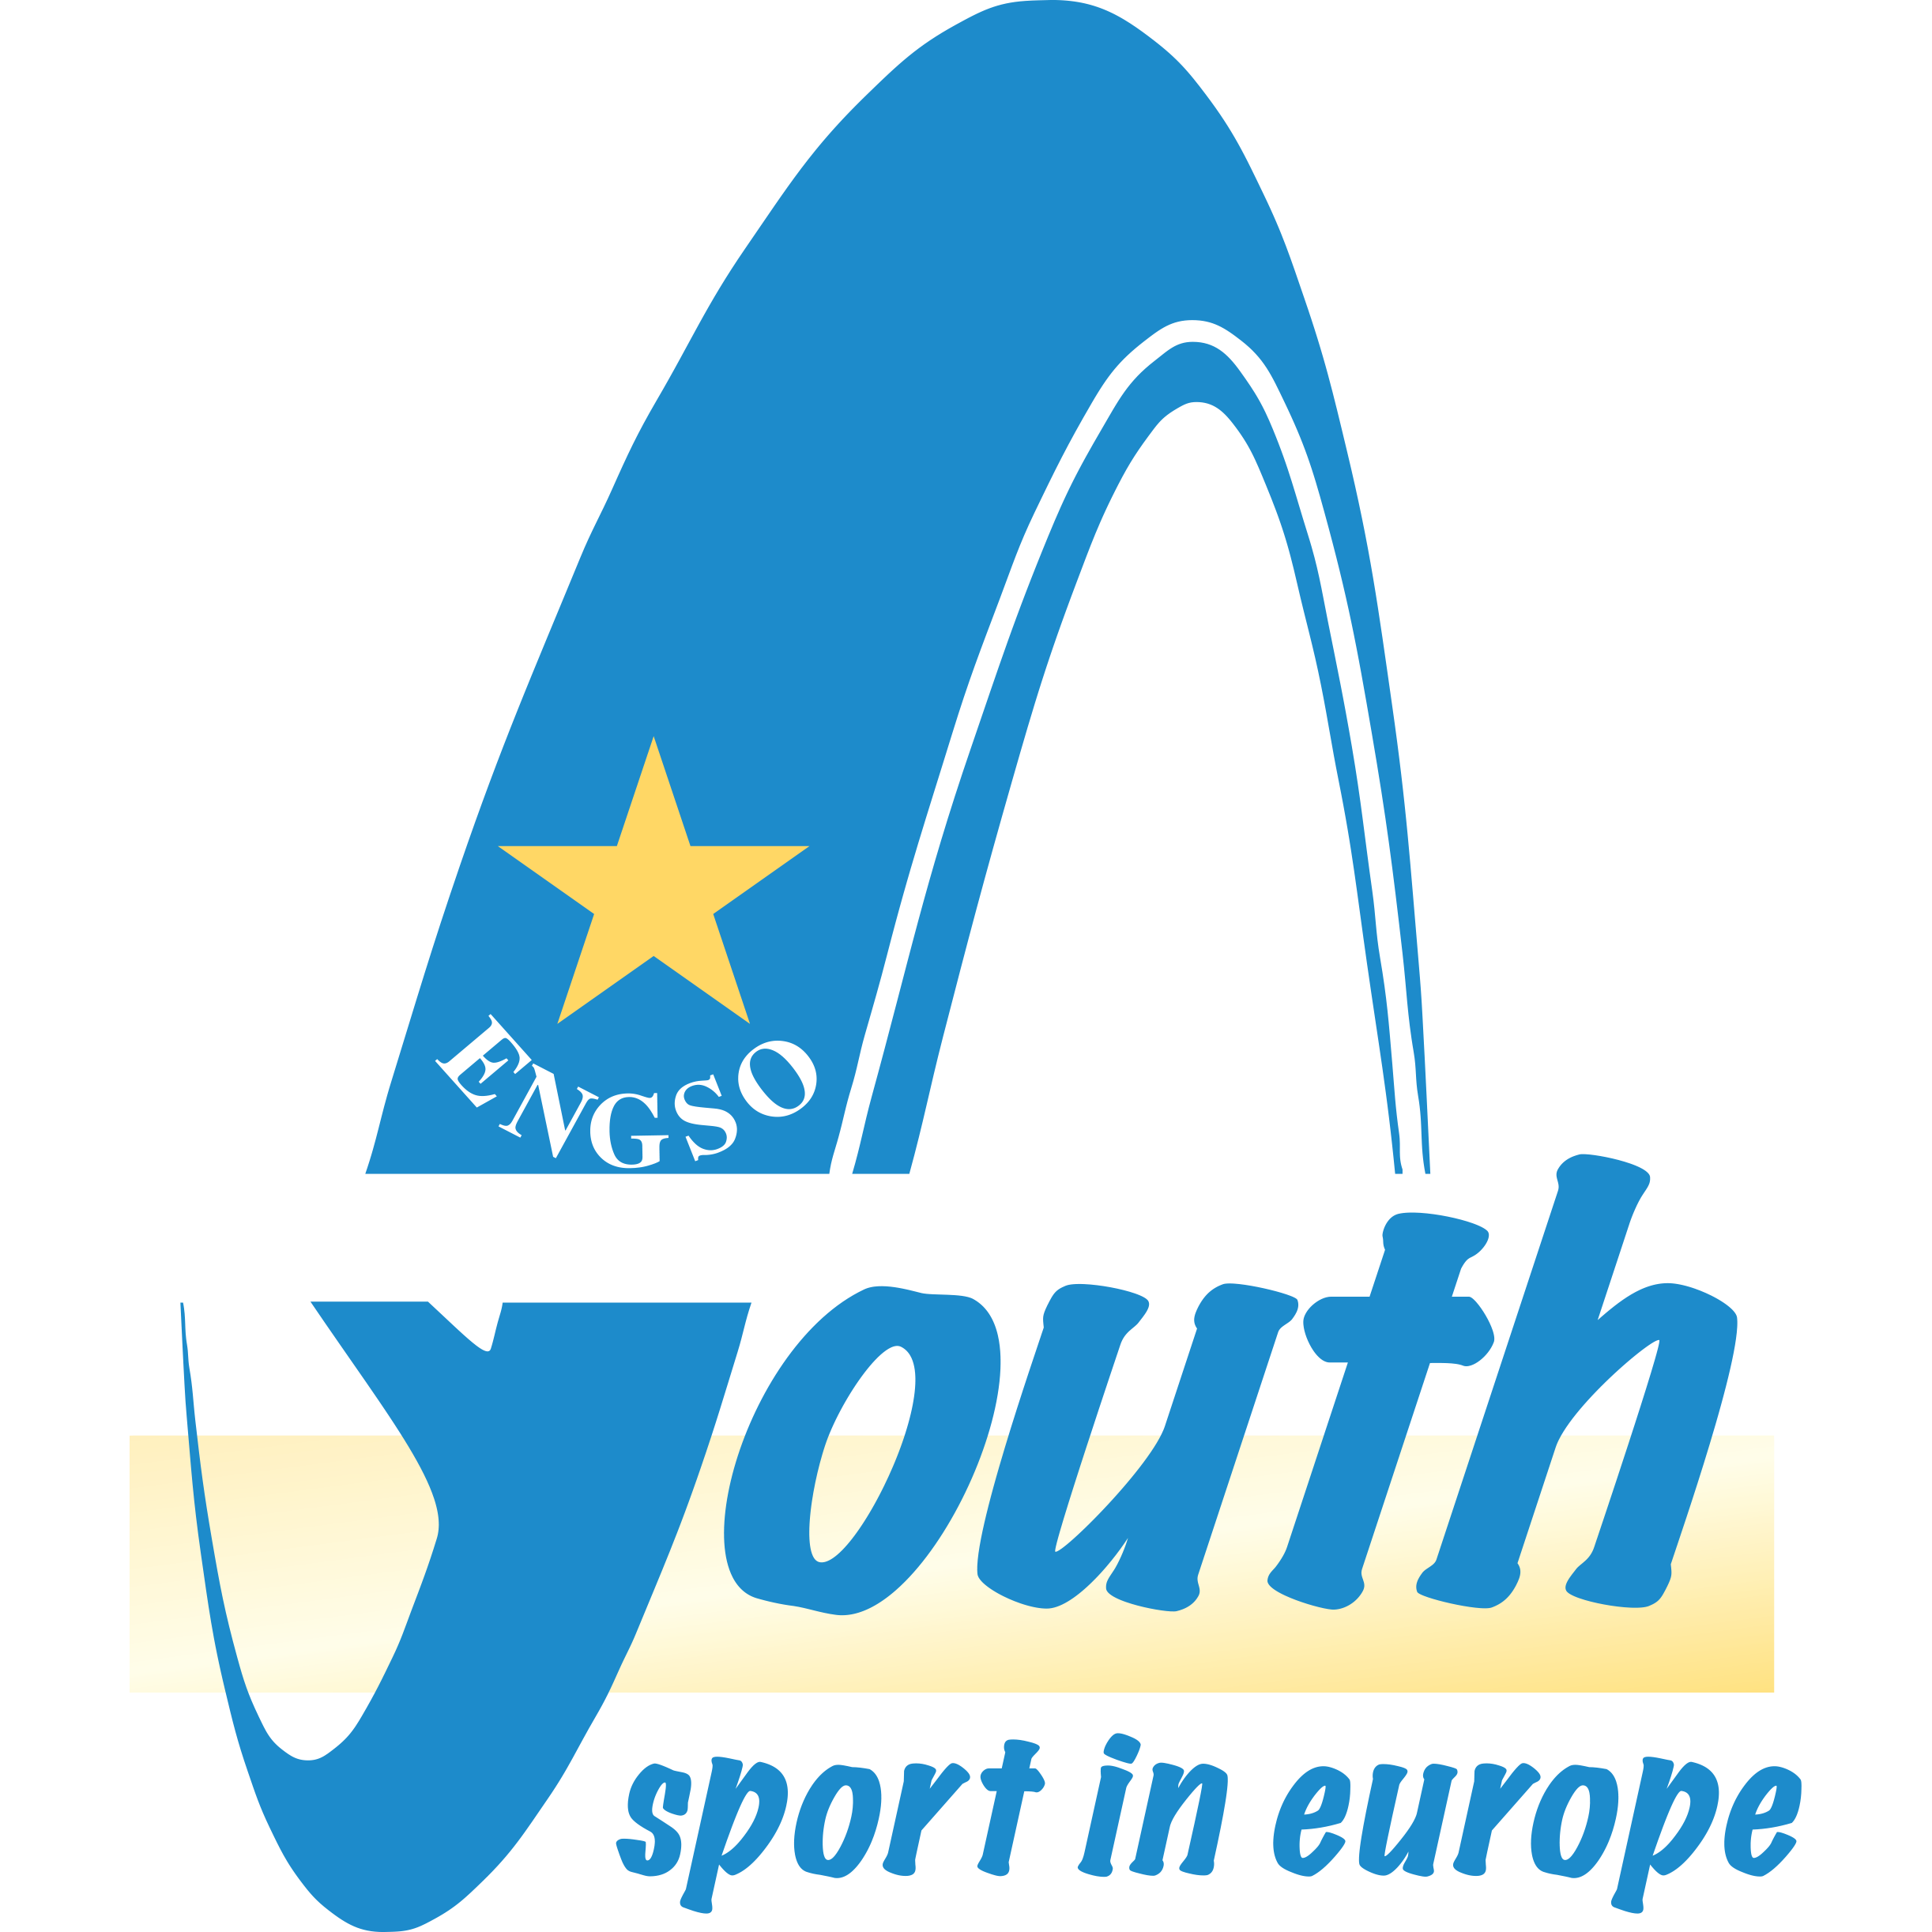 Society sports. Youth Sports logo. Youth Sports Society logo. Insport kg logo.